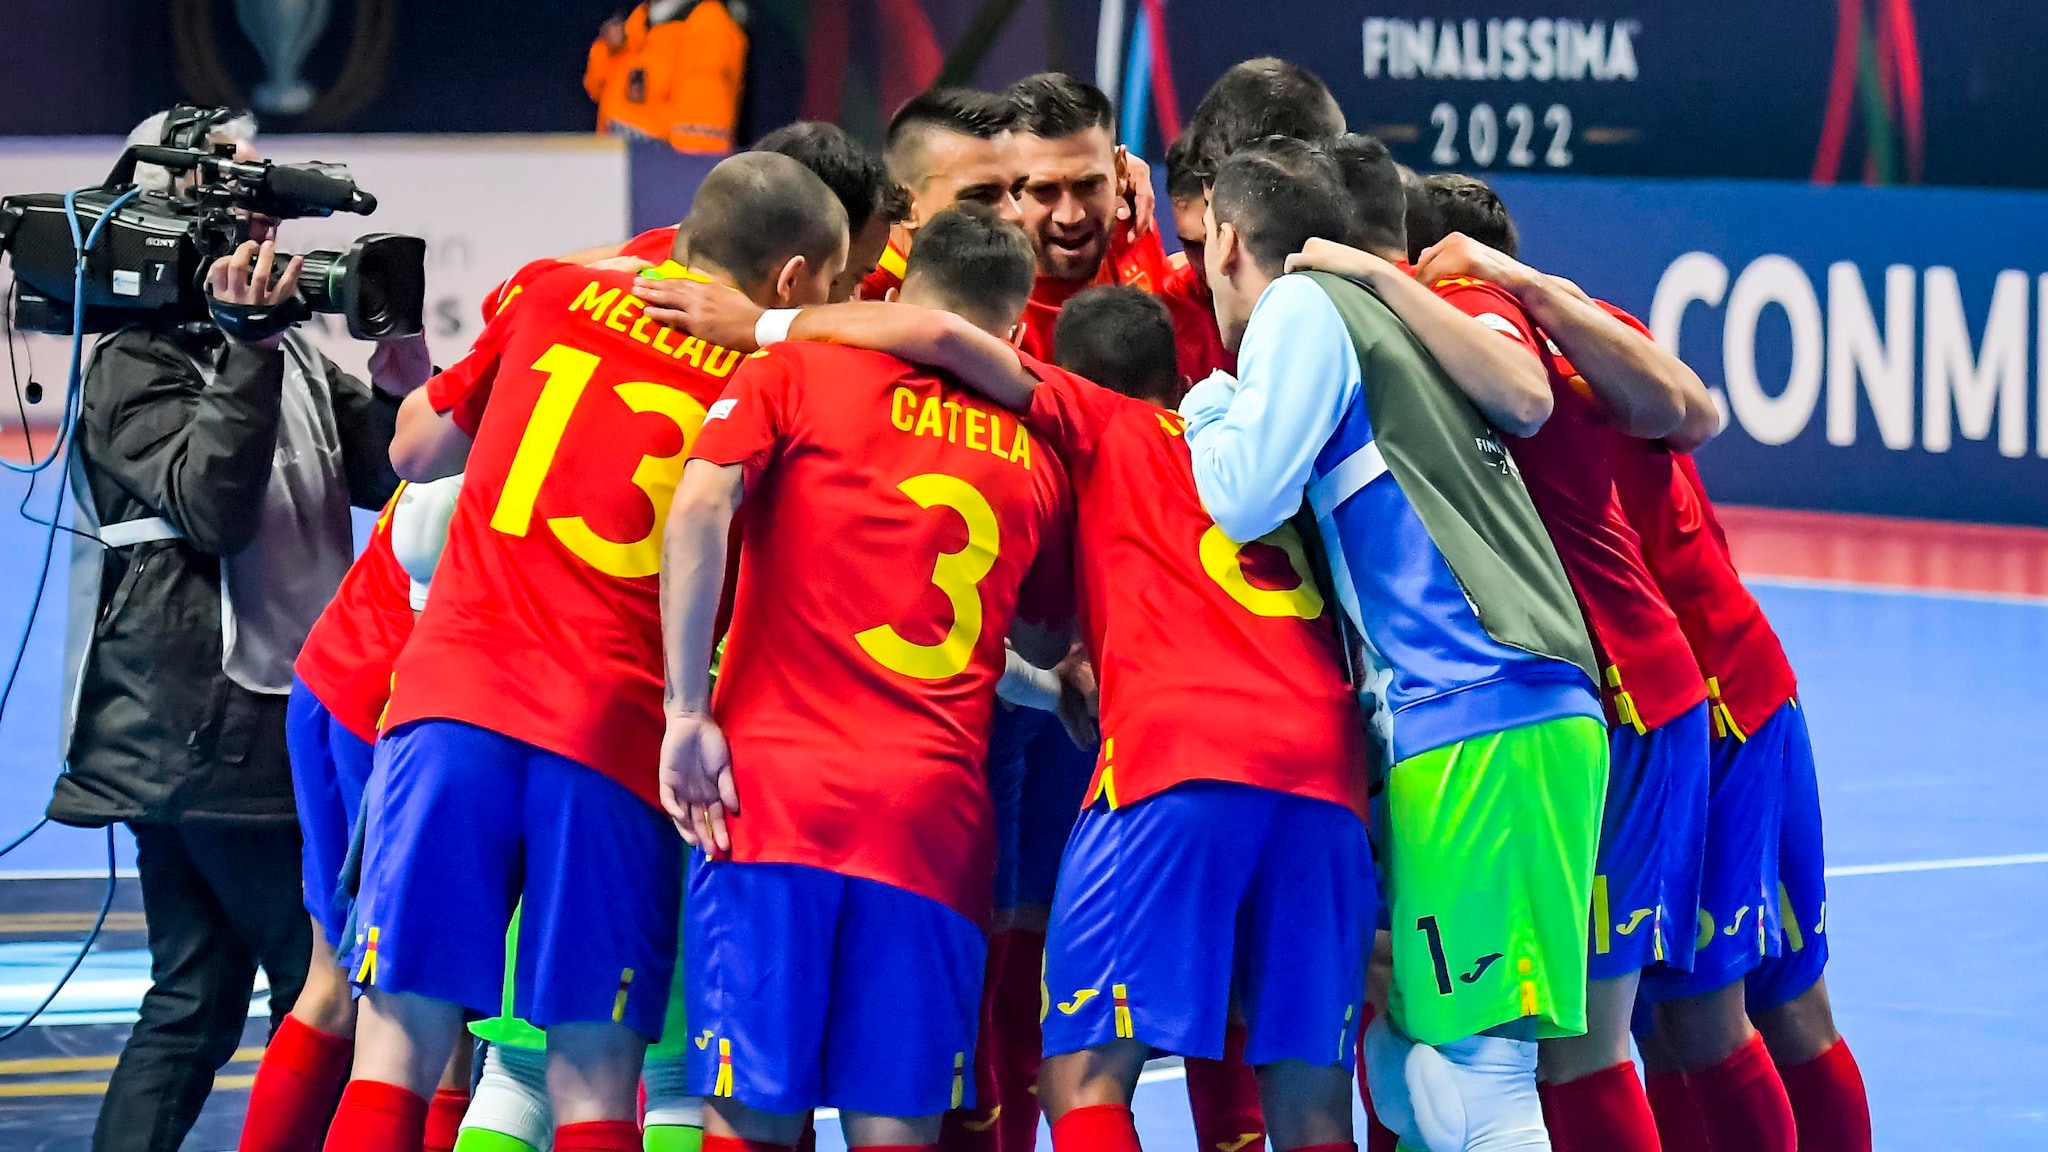 Espanha x Portugal, Final de Futsal Finalíssima: Onde assistir, hora do pontapé inicial |  final de futsal